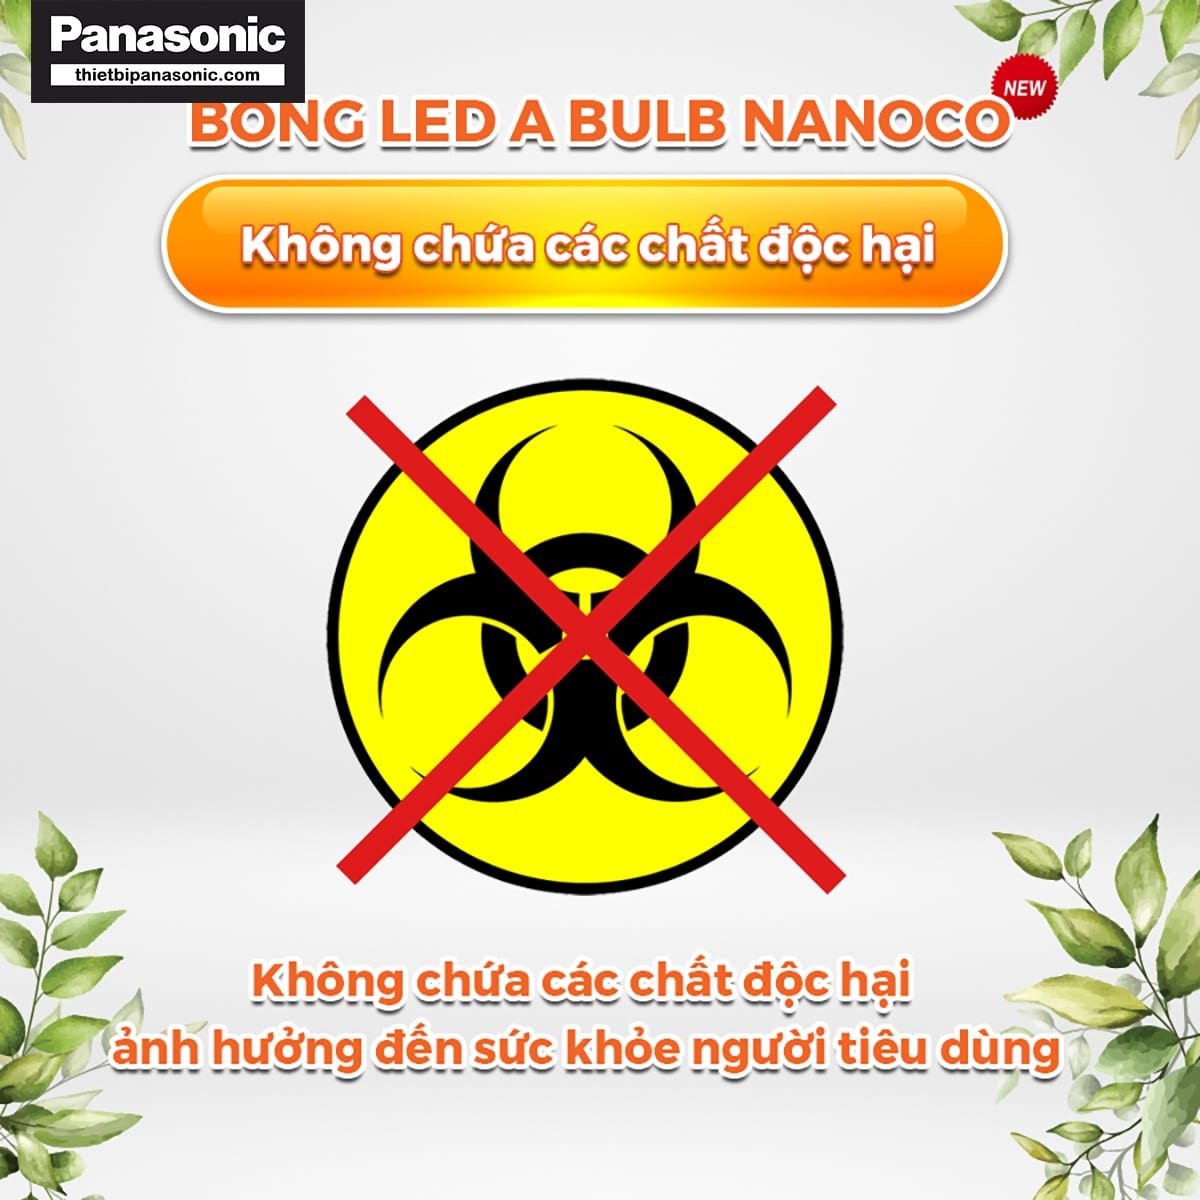 Bóng đèn bulb 40W Nanoco NLBT406, NLBT403 không chứa các chất độc hại ảnh hưởng xấu tới sức khỏe